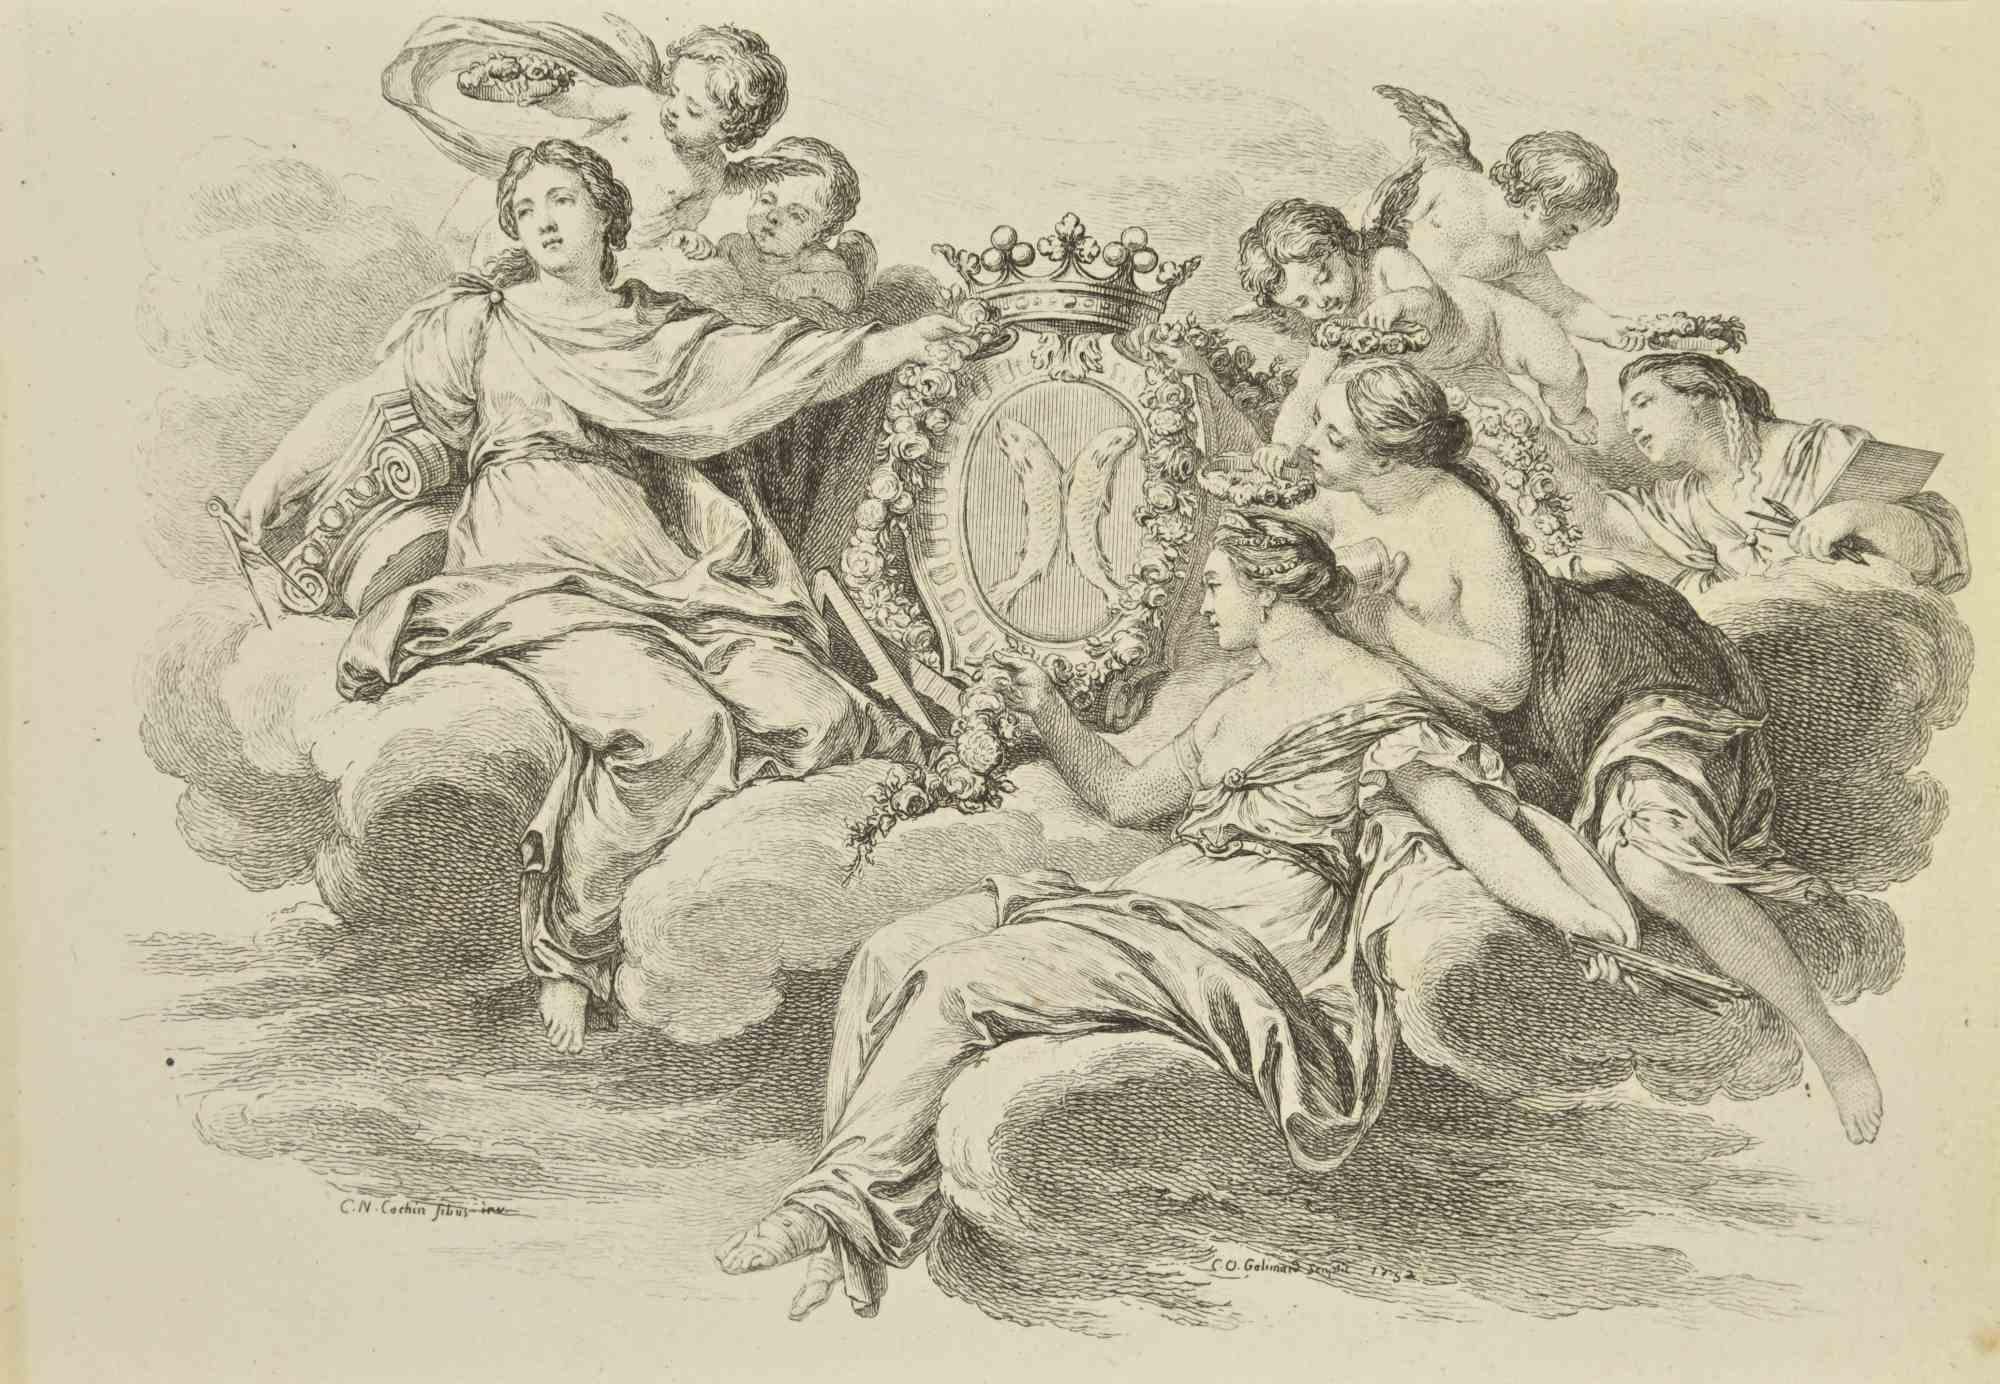 Gathering ist eine Radierung von Nicholas Cochin aus dem Jahr 1755.

Signiert auf der Platte.

Gute Bedingungen.

Das Kunstwerk wird mit sicheren Strichen dargestellt.